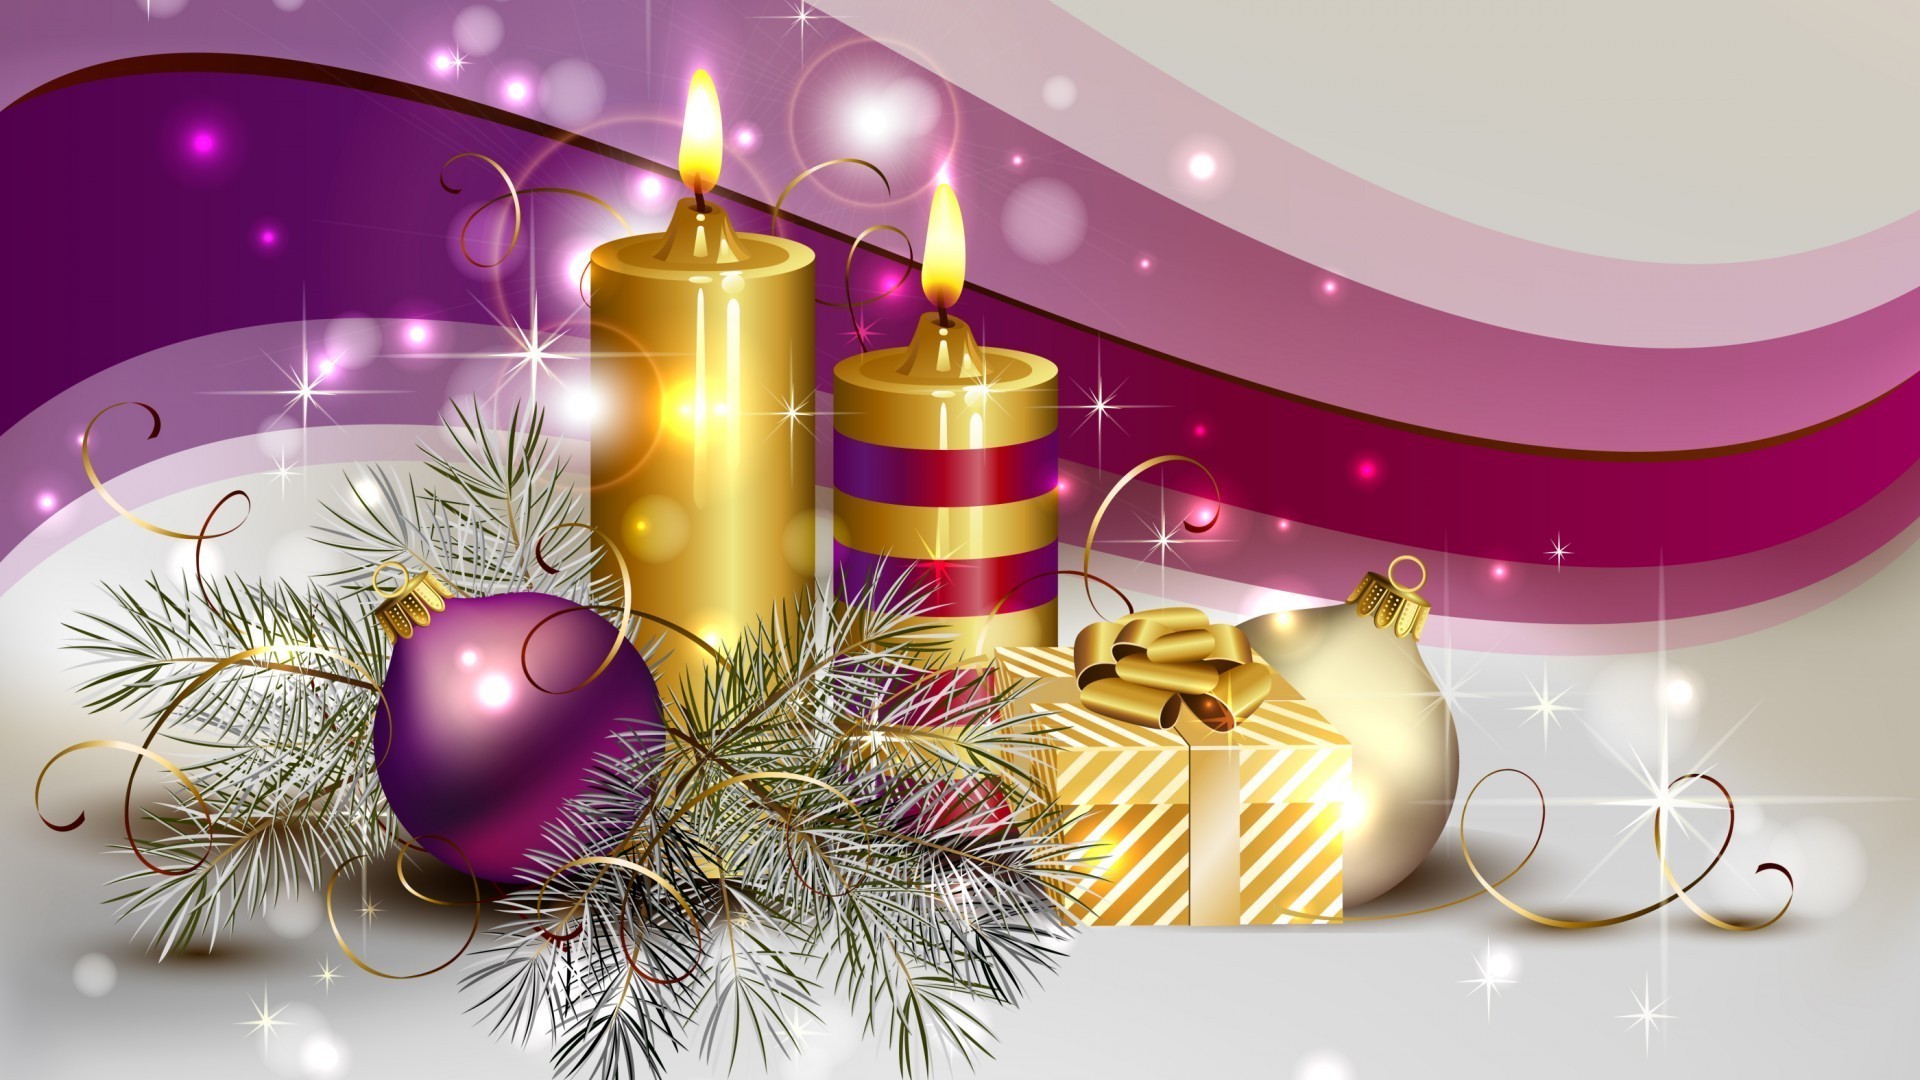 новый год рождество праздник украшения свеча светит зима нить мерри мяч дизайн интерьера карта золото витиеватый рабочего стола яркий подарок приветствие лук участник дизайн